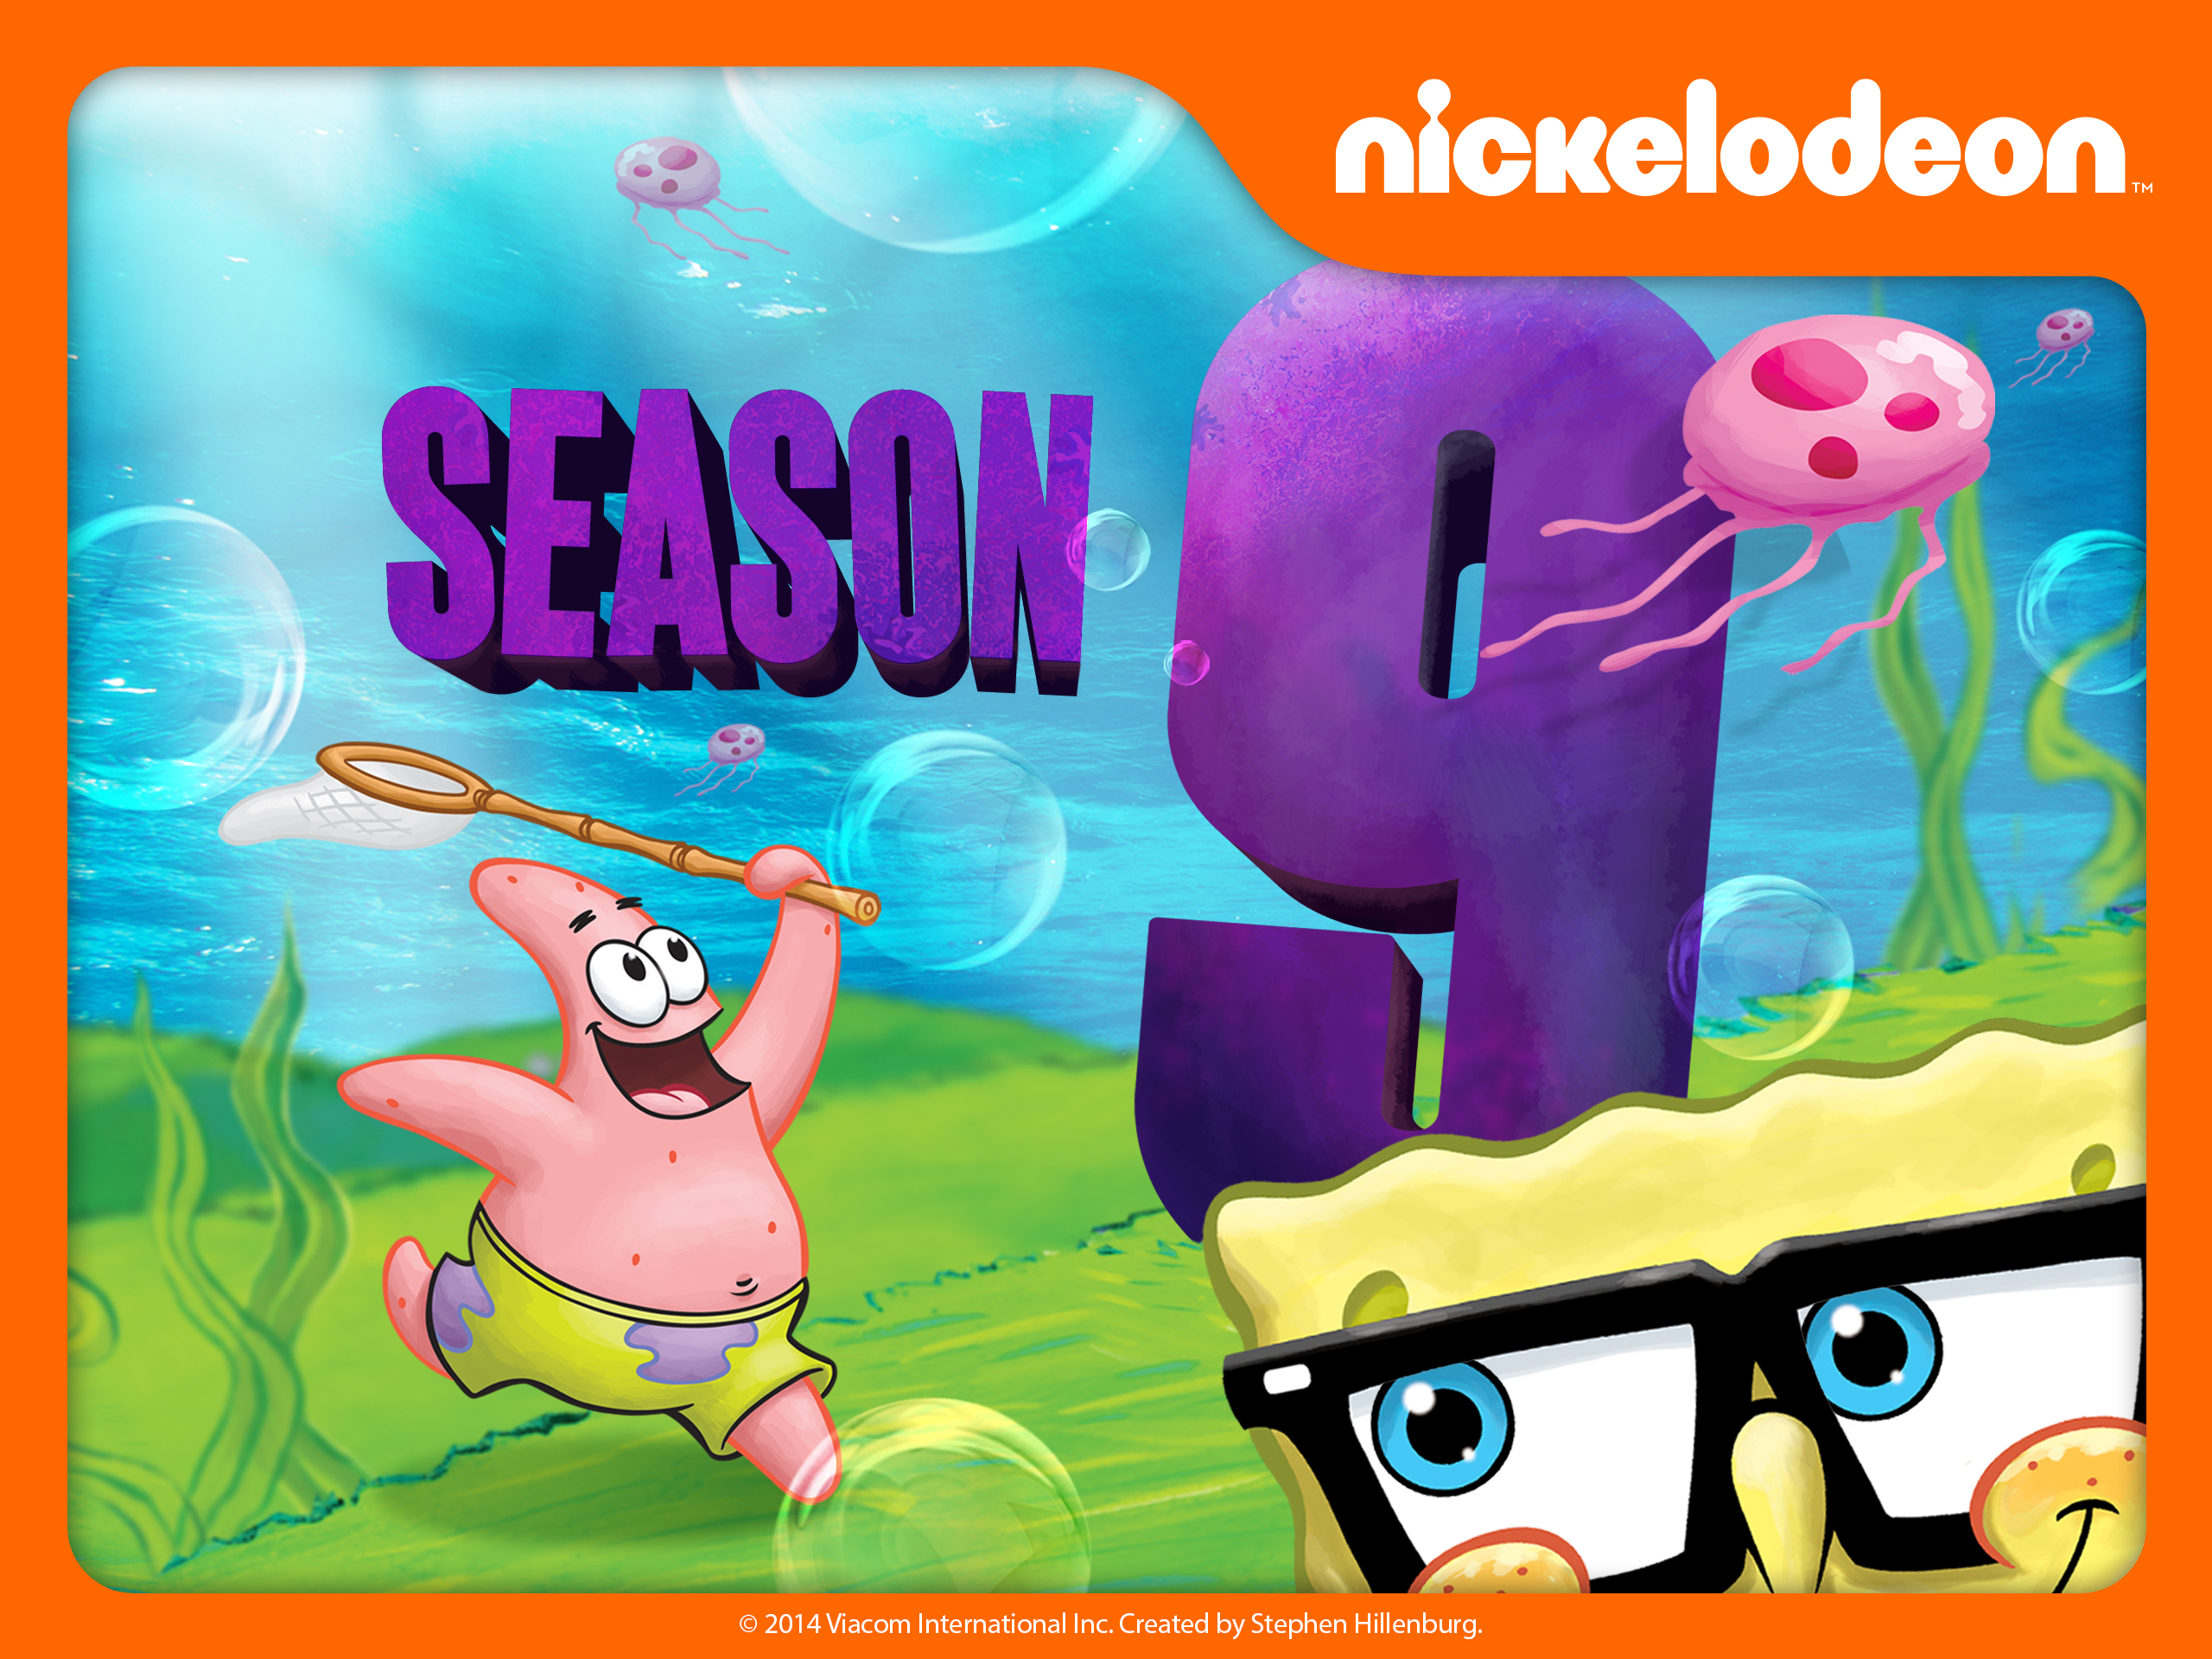 spongebob squarepants episodes subtitle indonesia the legend